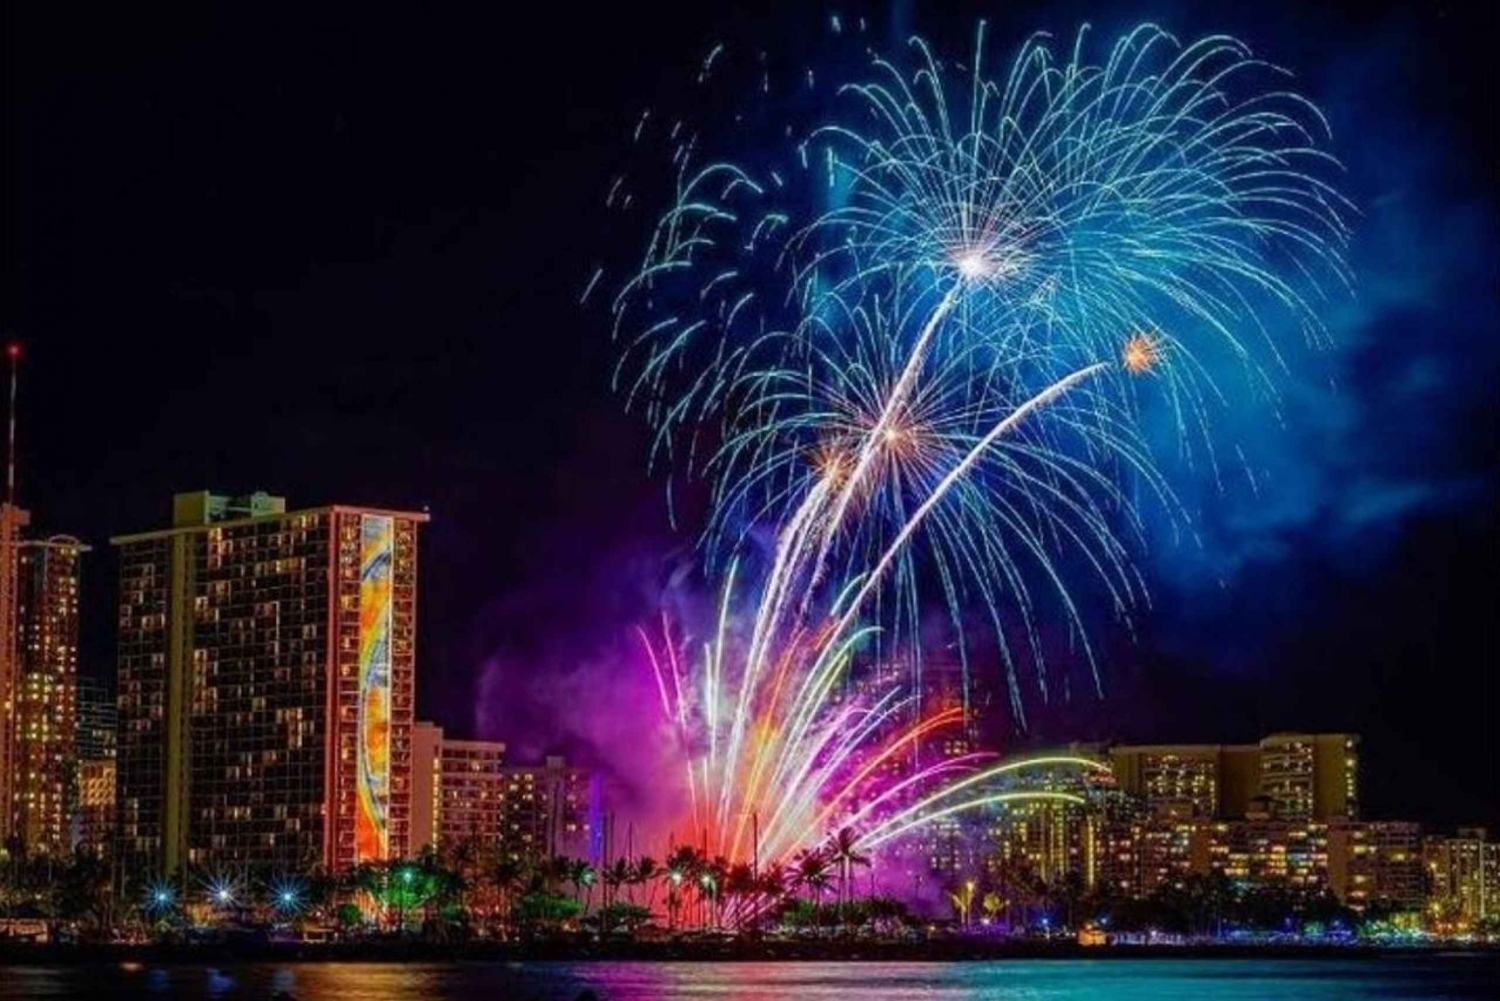 Honolulu: Rejs katamaranem z fajerwerkami w Waikiki